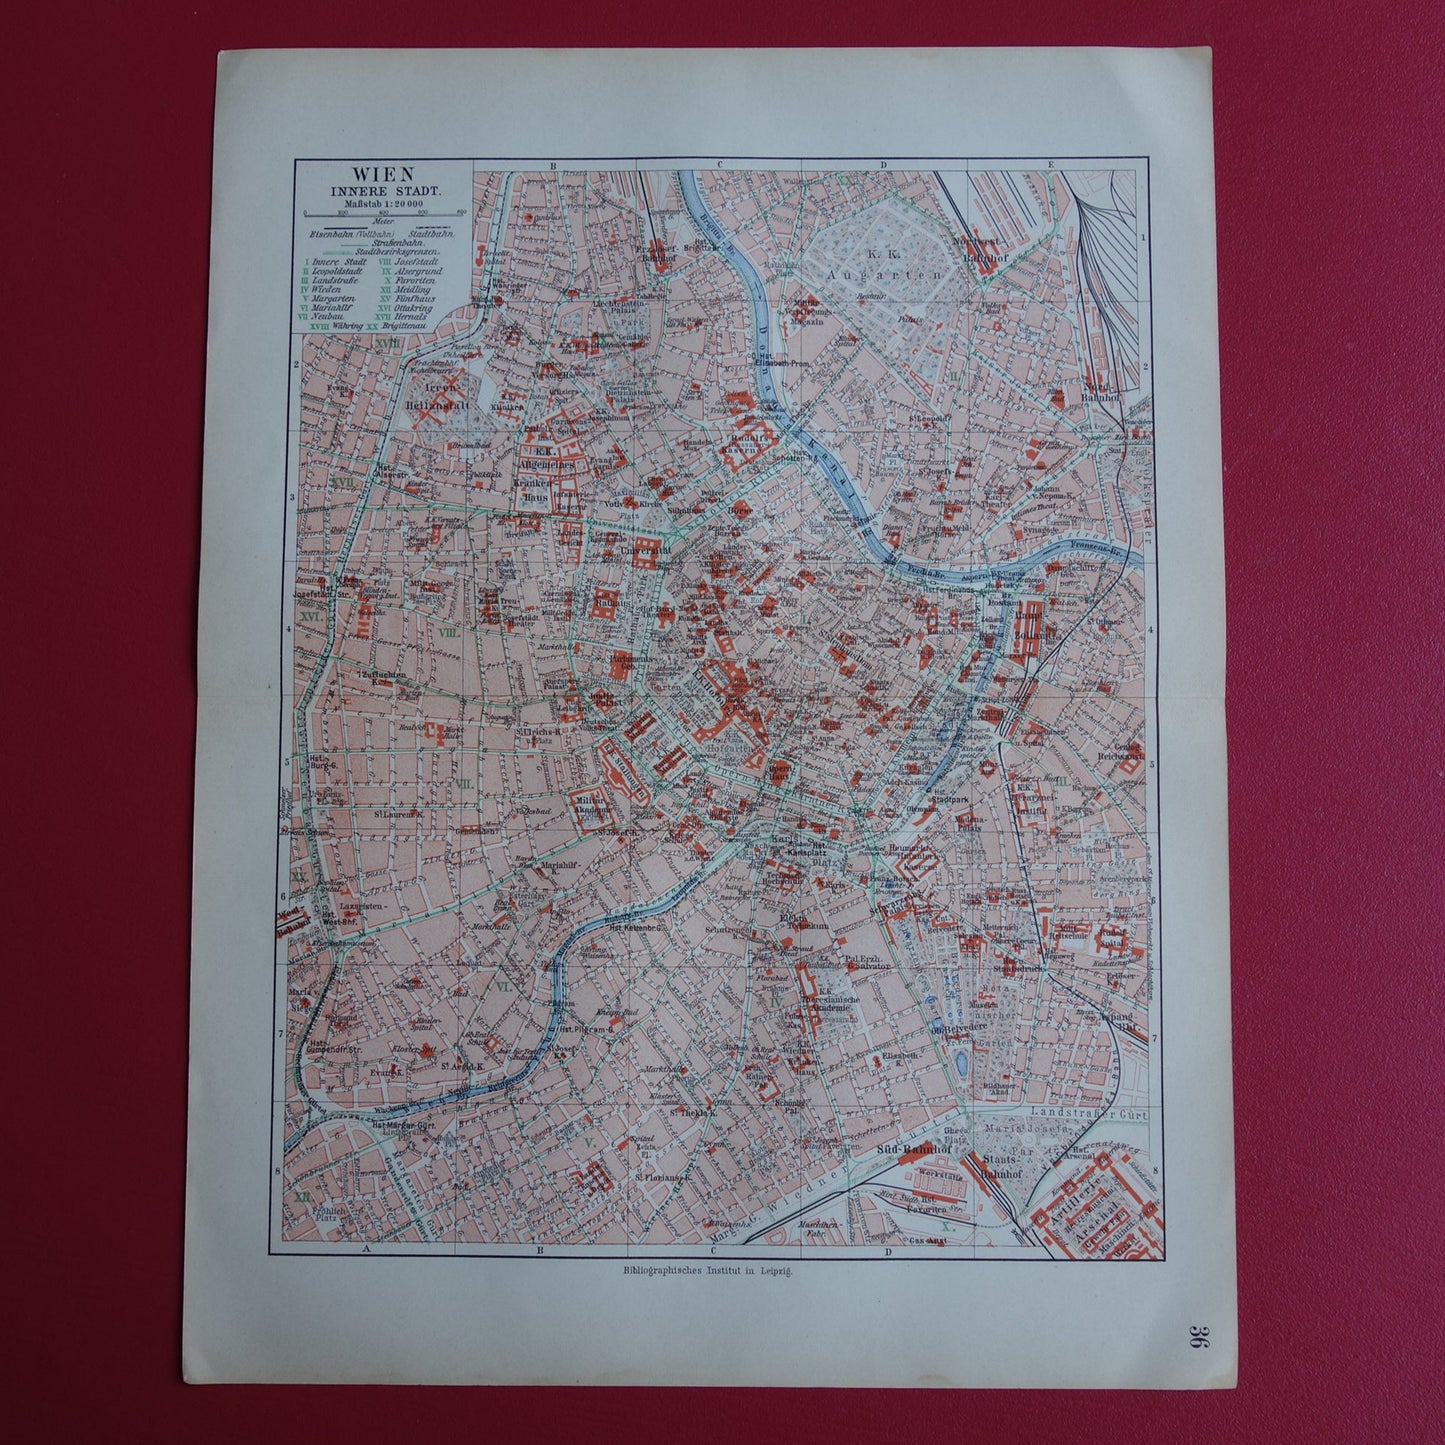 Wenen oude kaart van Wenen Oostenrijk uit 1913 originele antieke plattegrond vintage kaarten